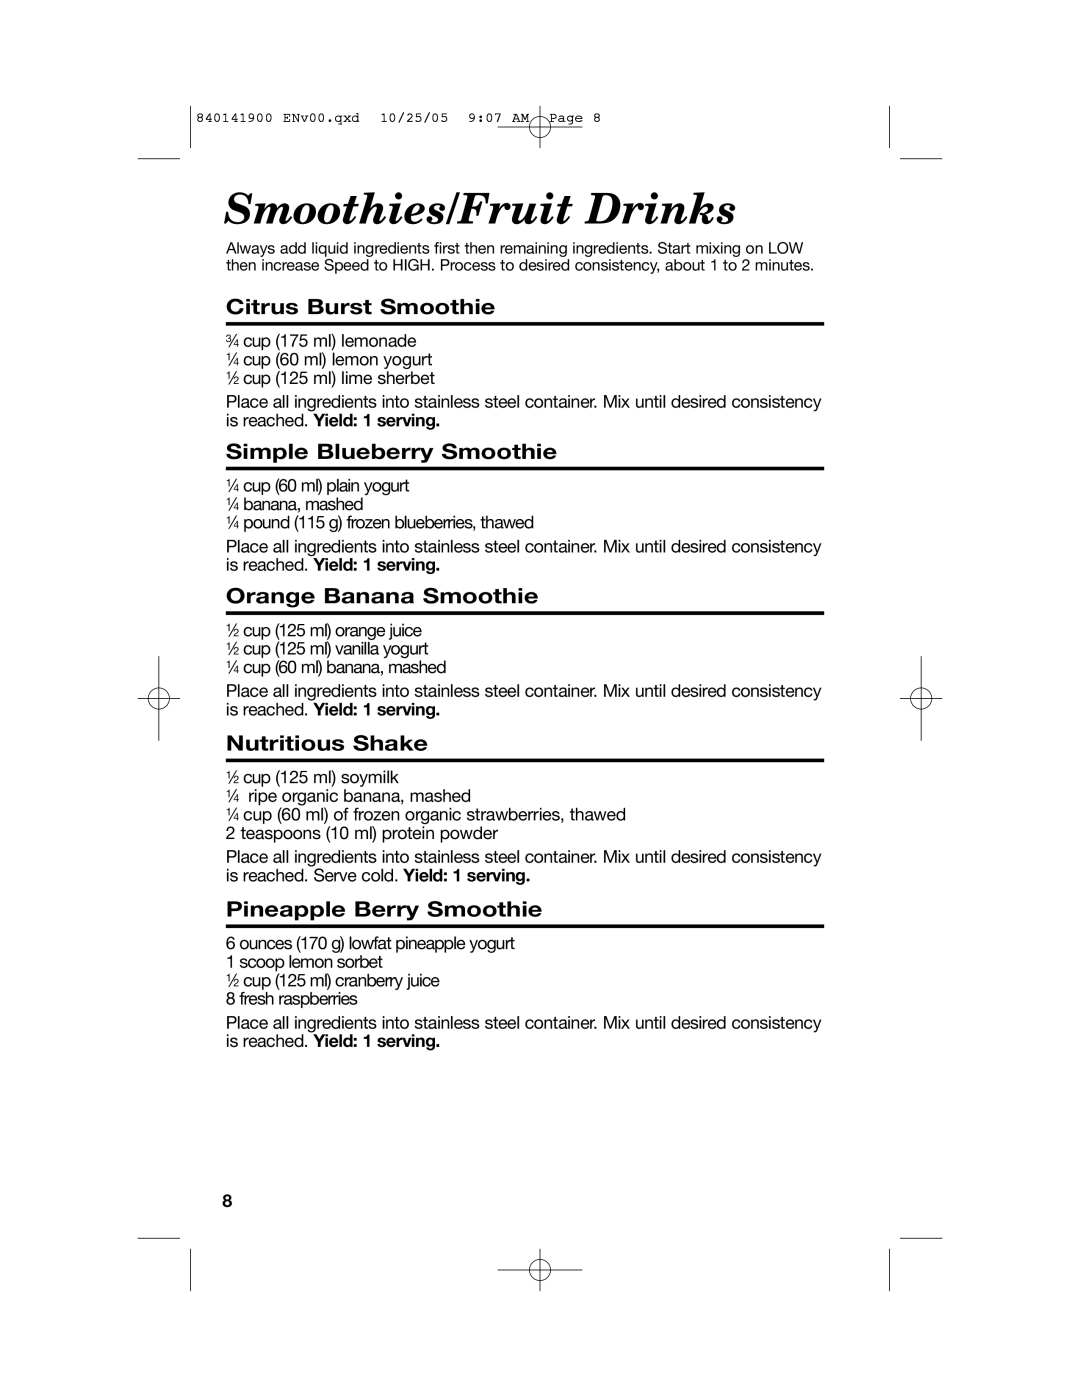 Hamilton Beach 840141900 Smoothies/Fruit Drinks, Citrus Burst Smoothie, Simple Blueberry Smoothie, Orange Banana Smoothie 